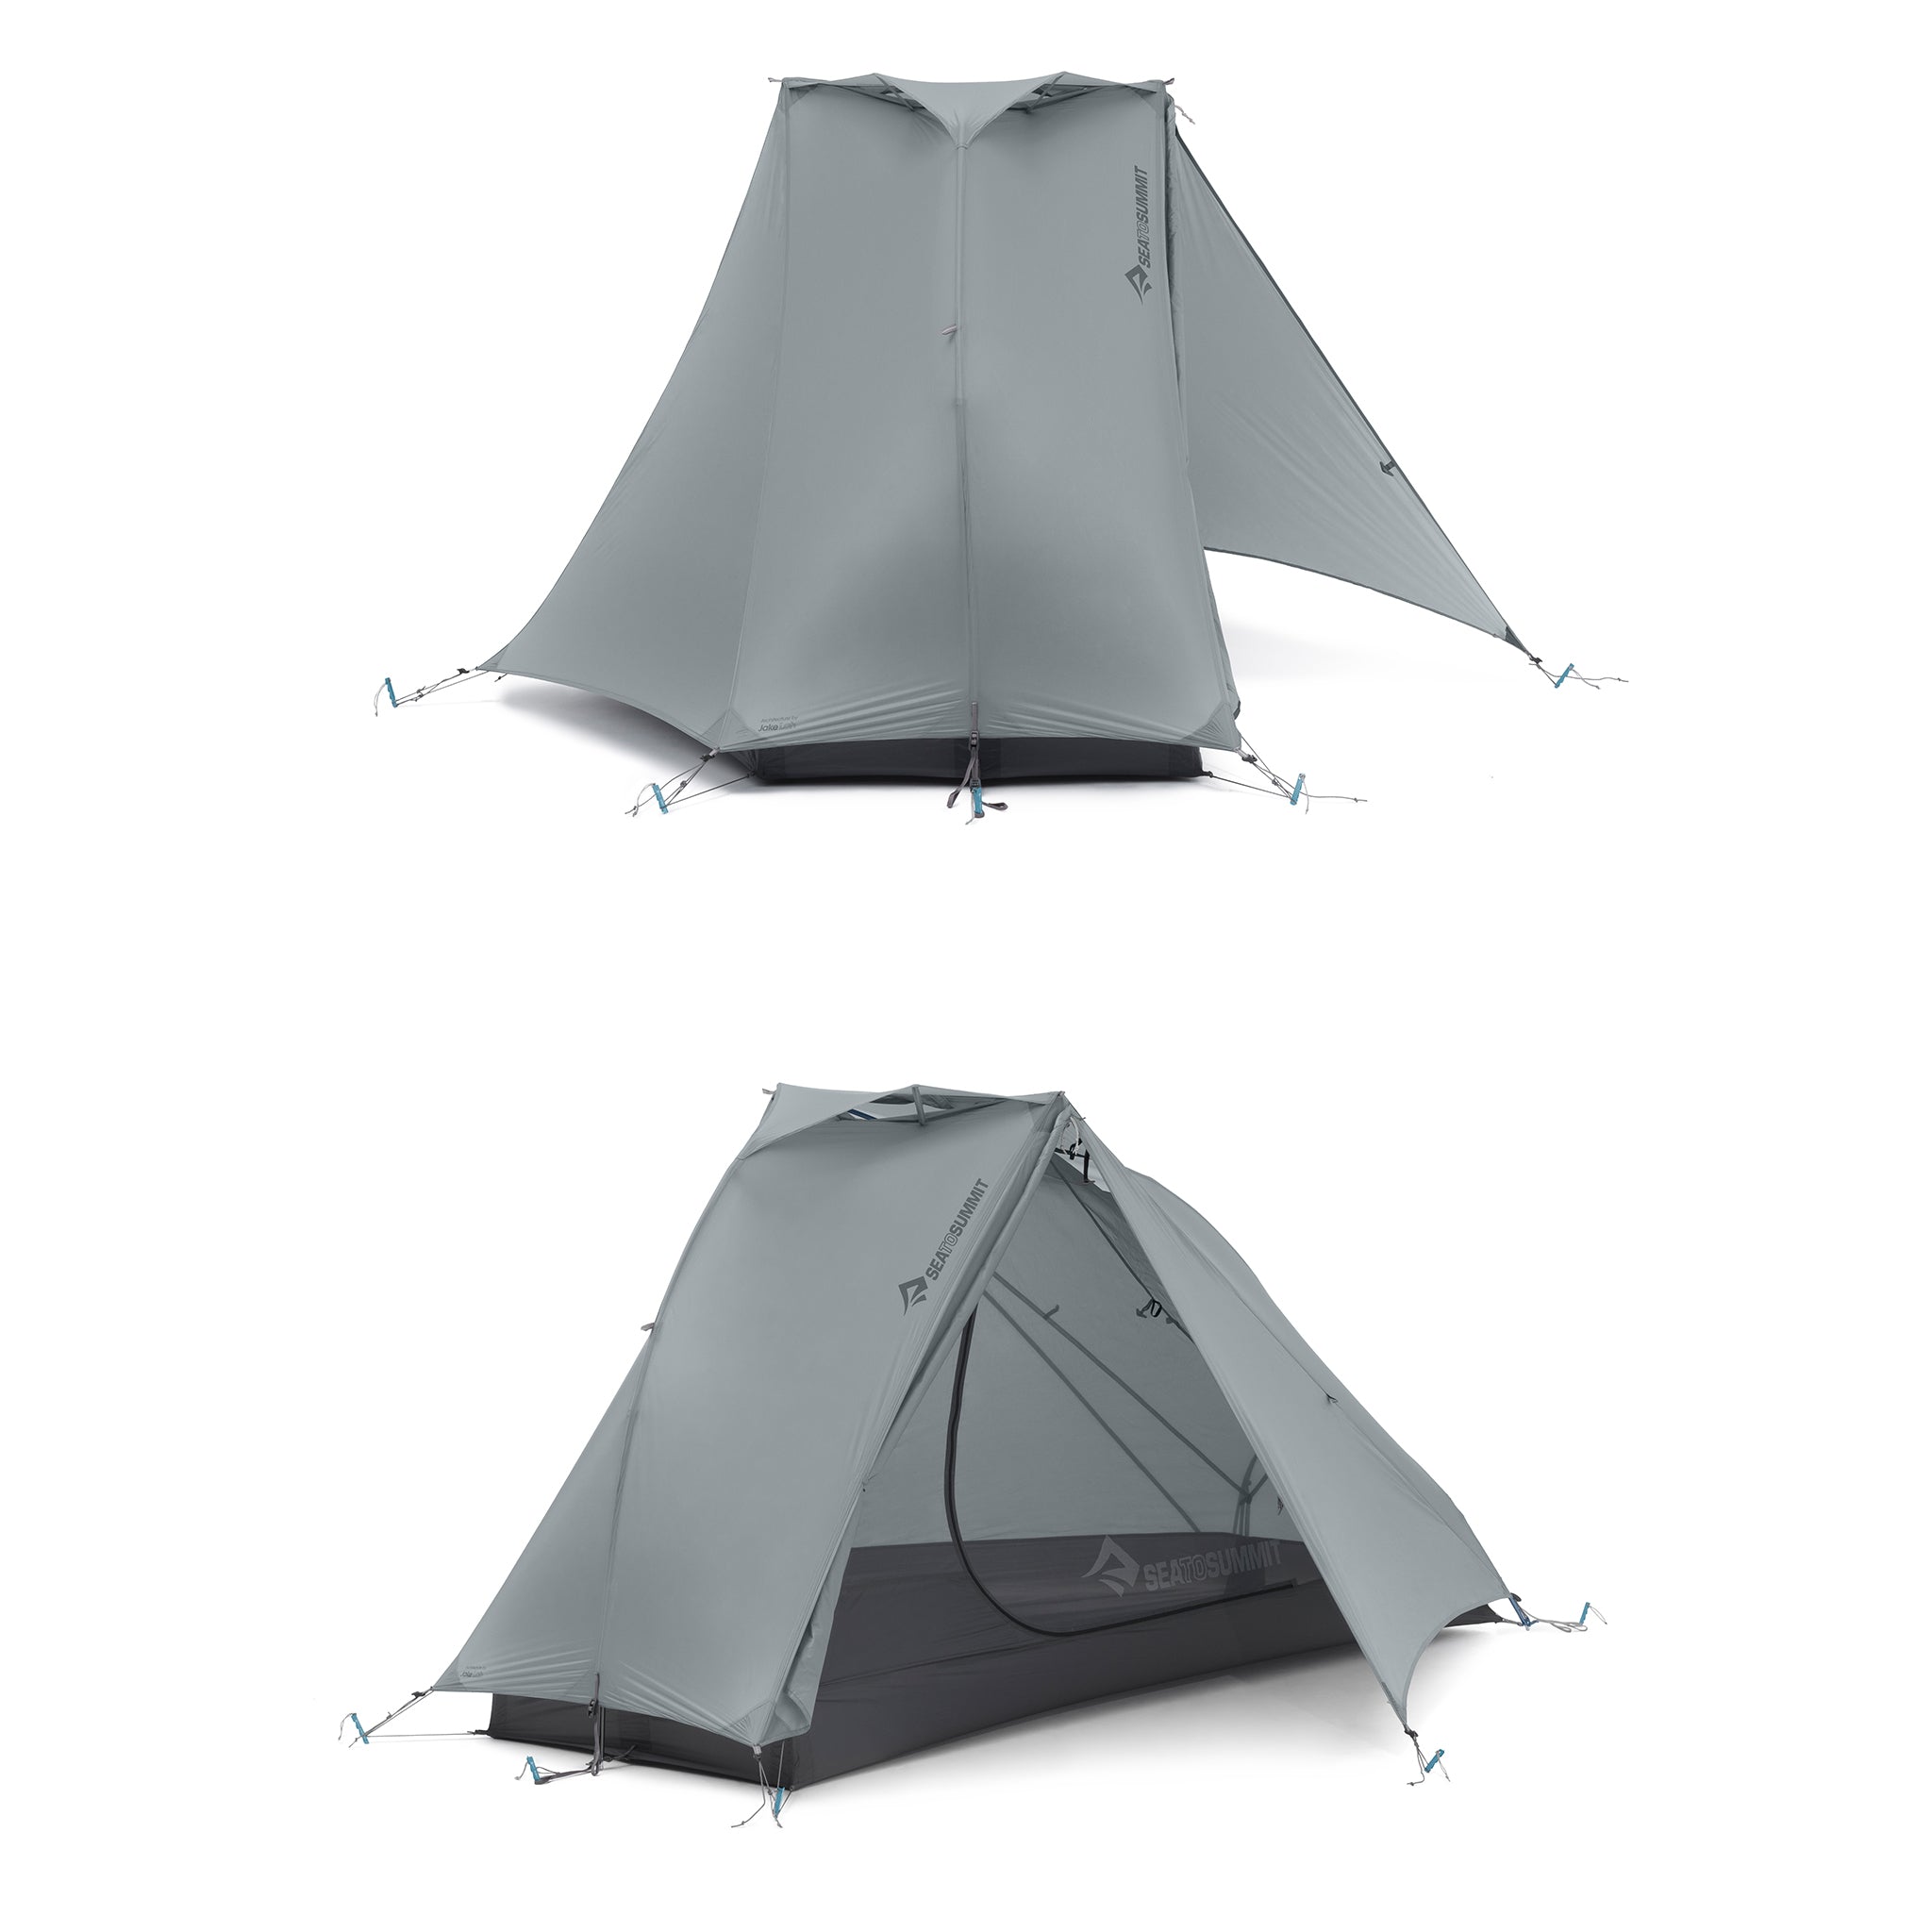 Alto TR 1 - One Person Semi Freestanding Ultralight Tent for